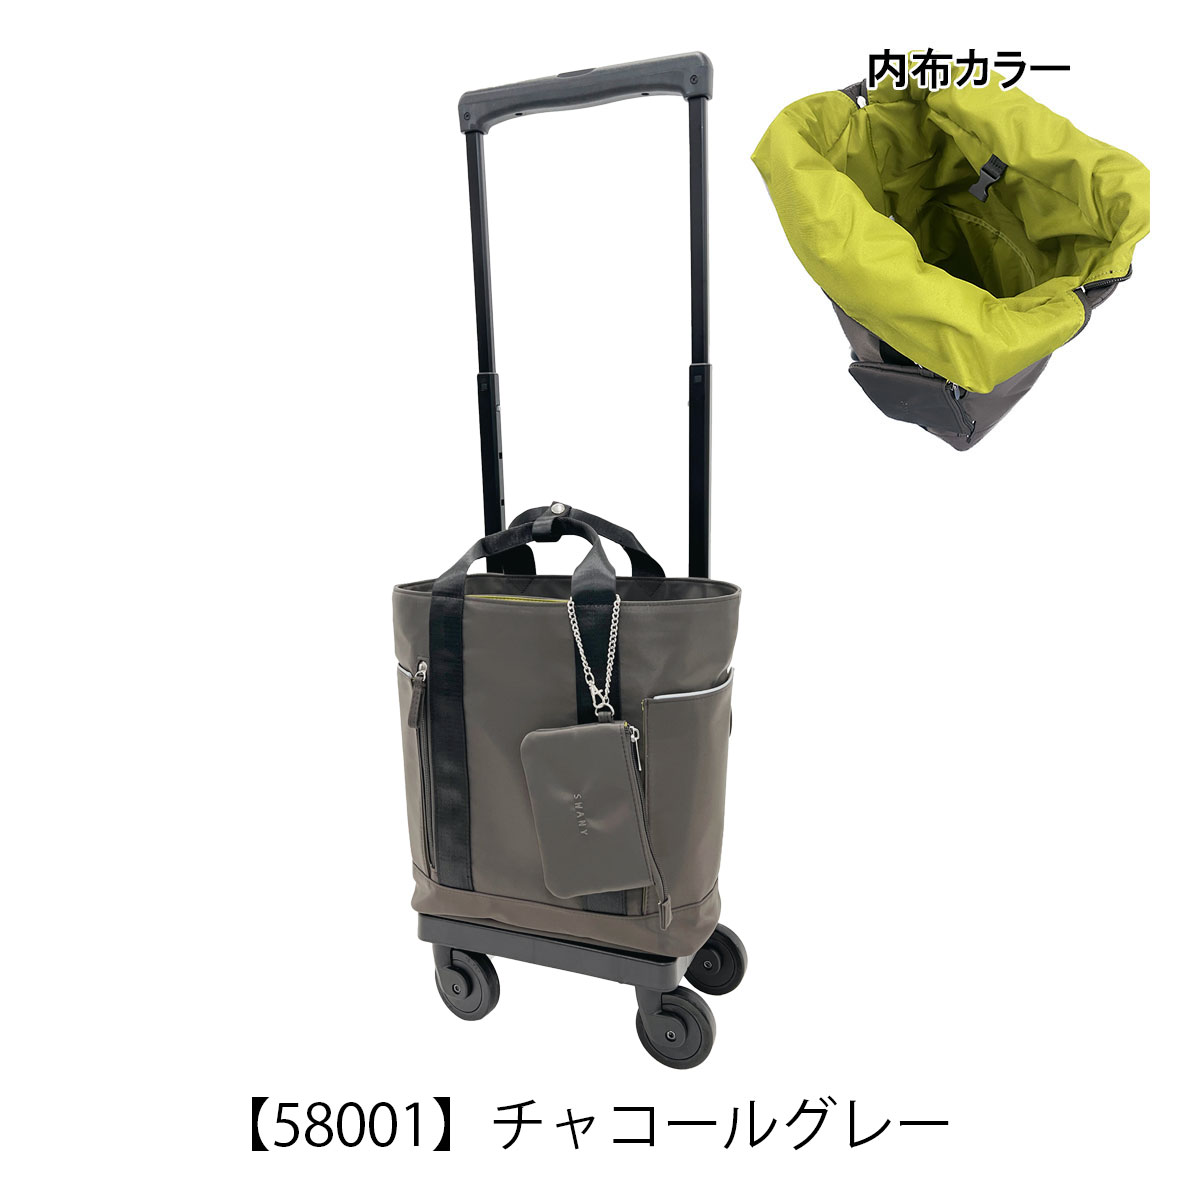 スワニー キャリーバッグ 東京デリカオリジナルD-580 Mサイズ SWANY 